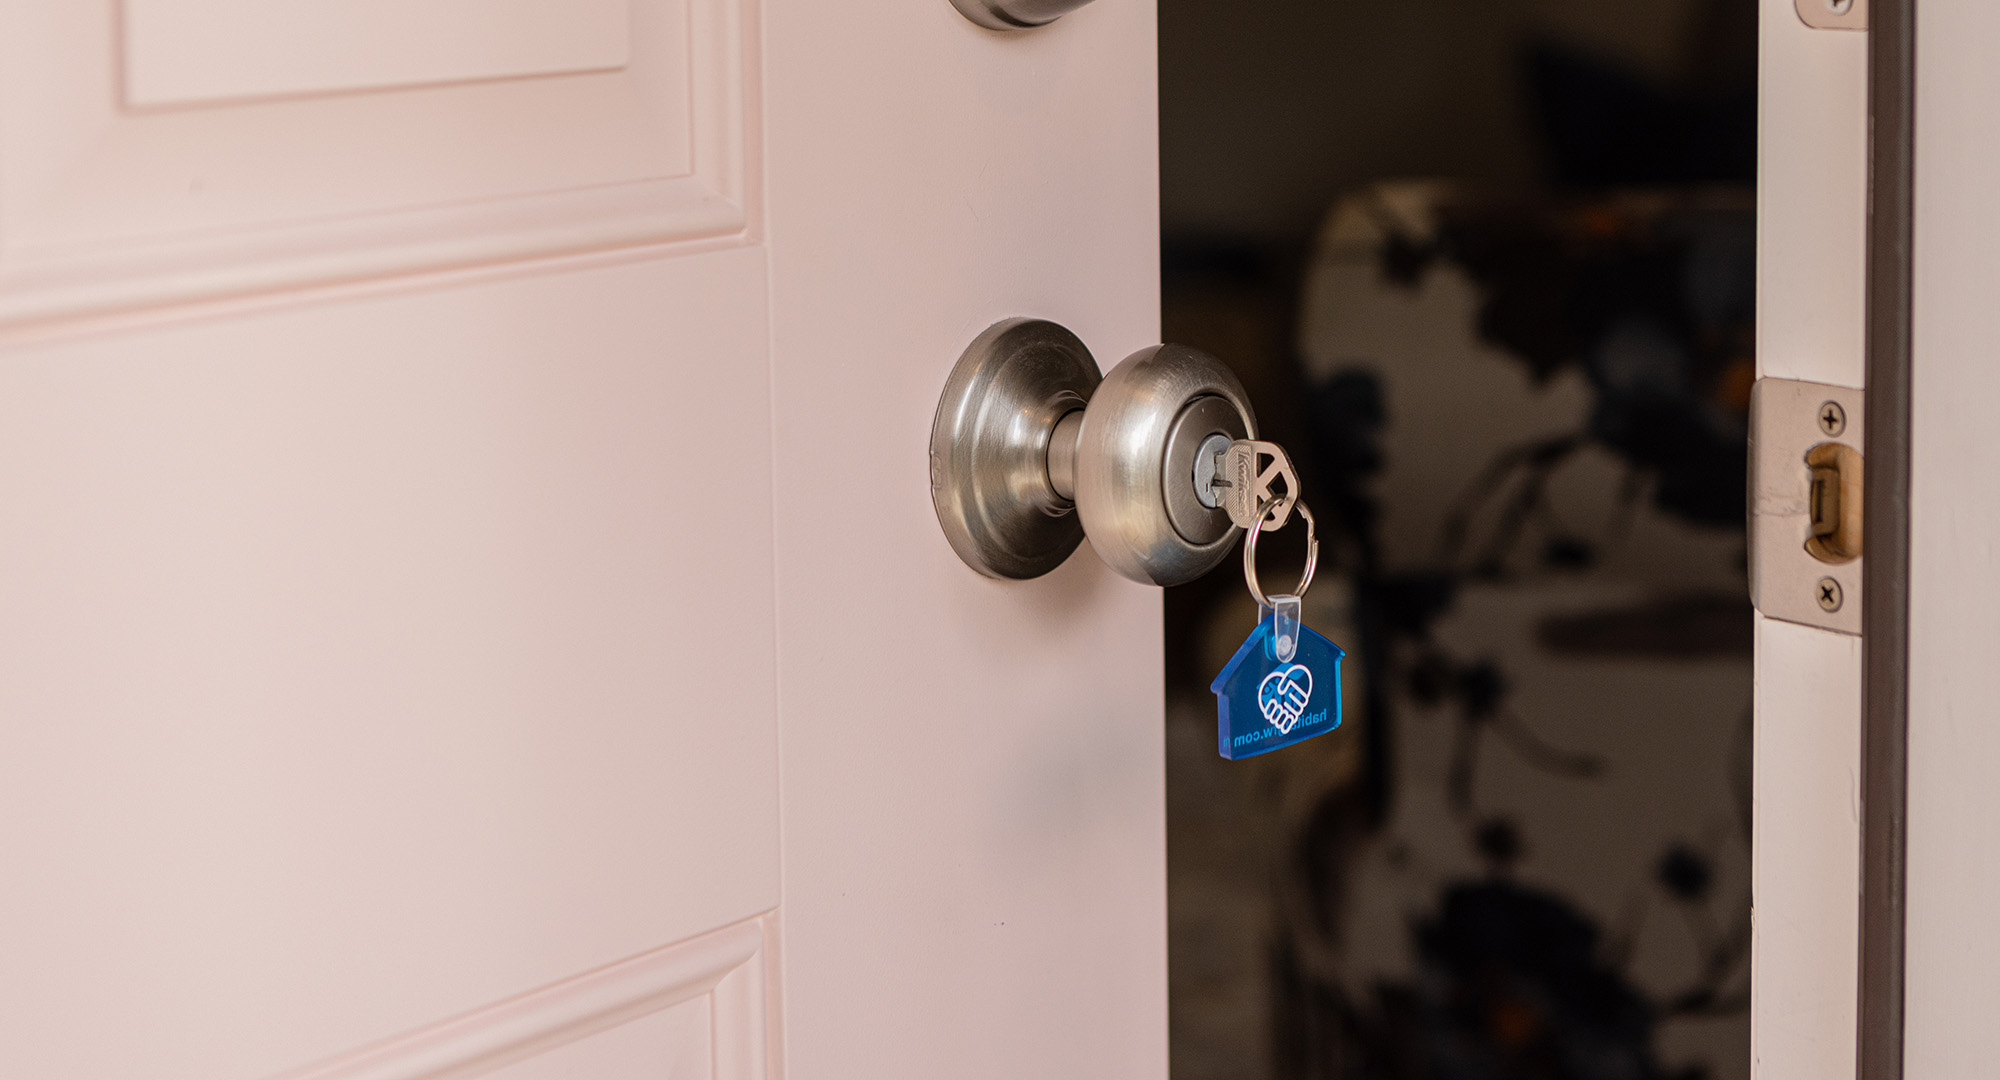 Pink door with Habitat keychain in lock